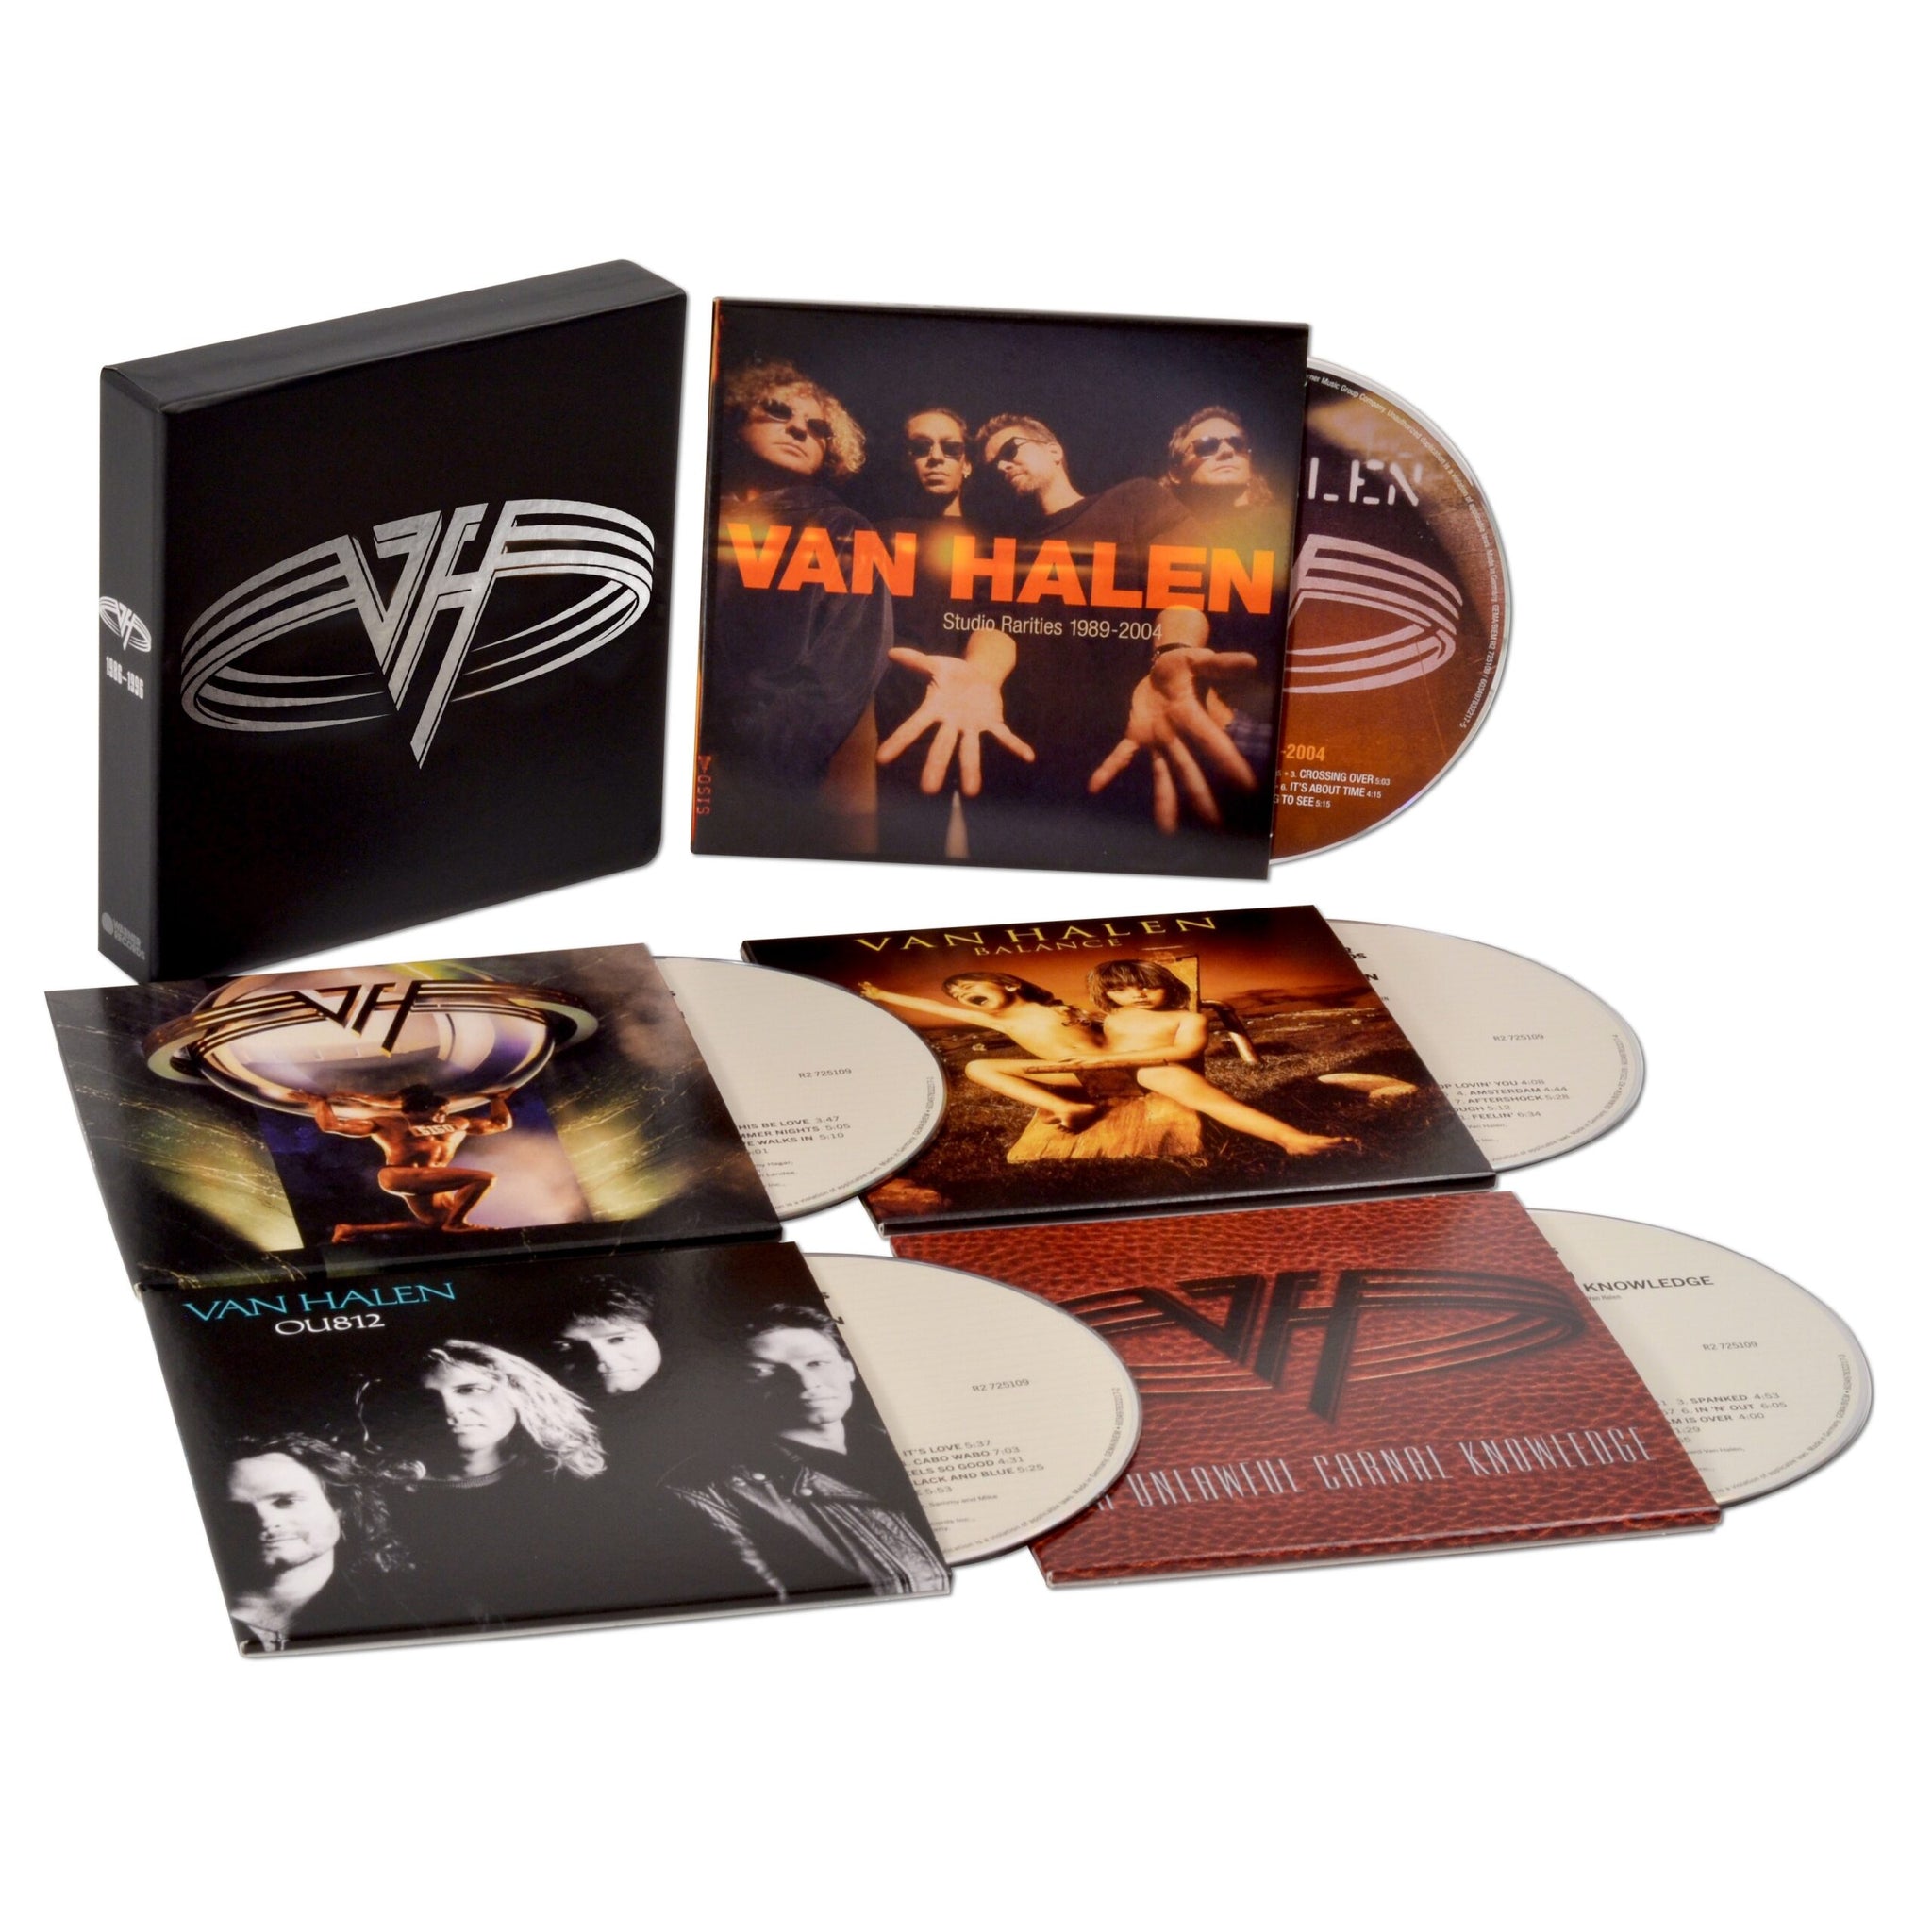 VAN HALEN - The Collection II - 5CD Boxset [OCT 6]